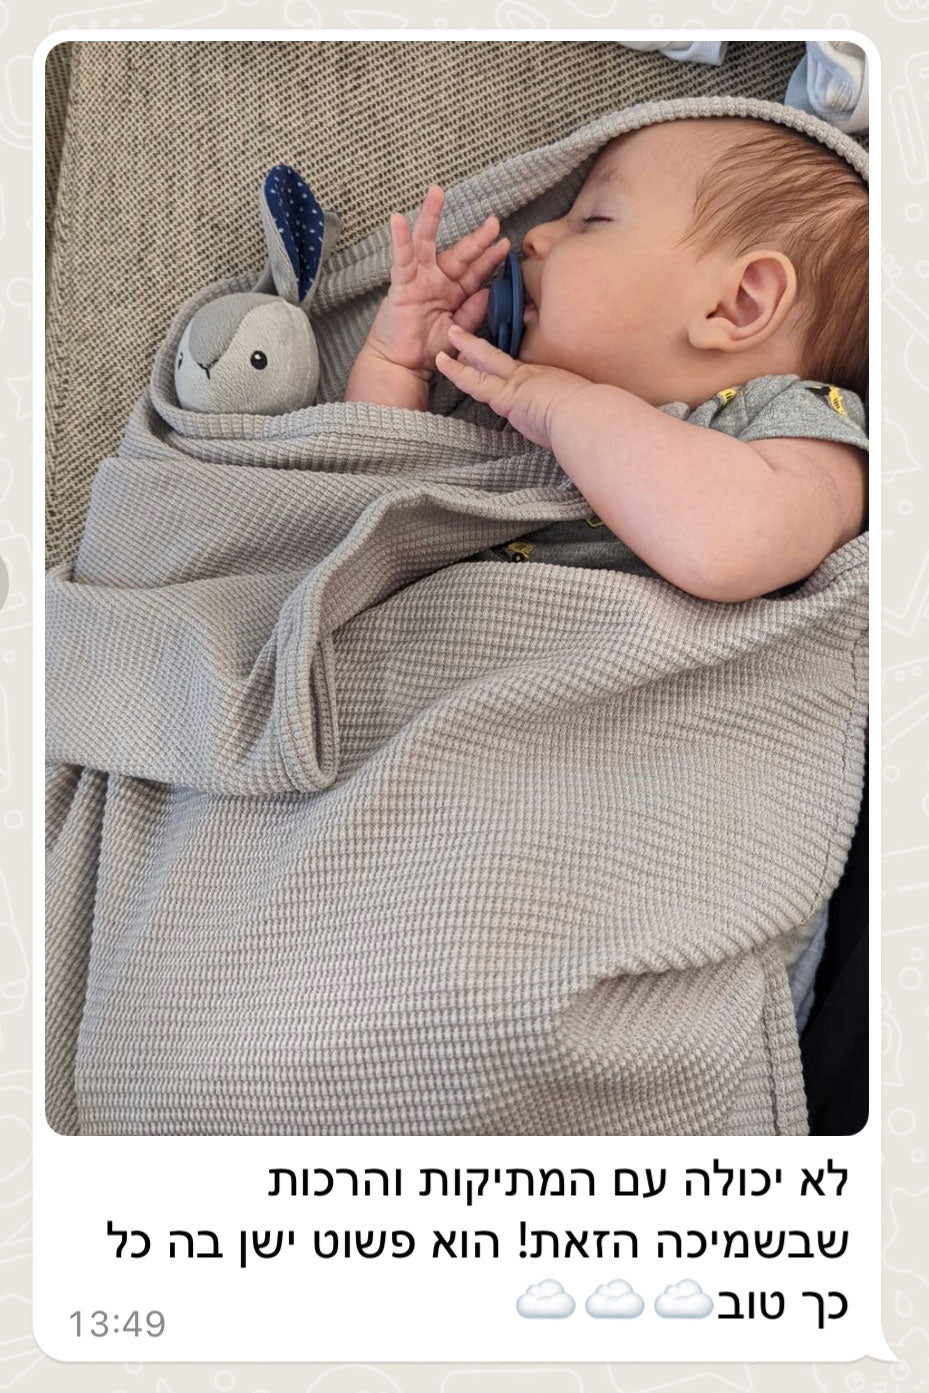 שמיכת עיטוף לתינוק - אפור בטון דגם לולו